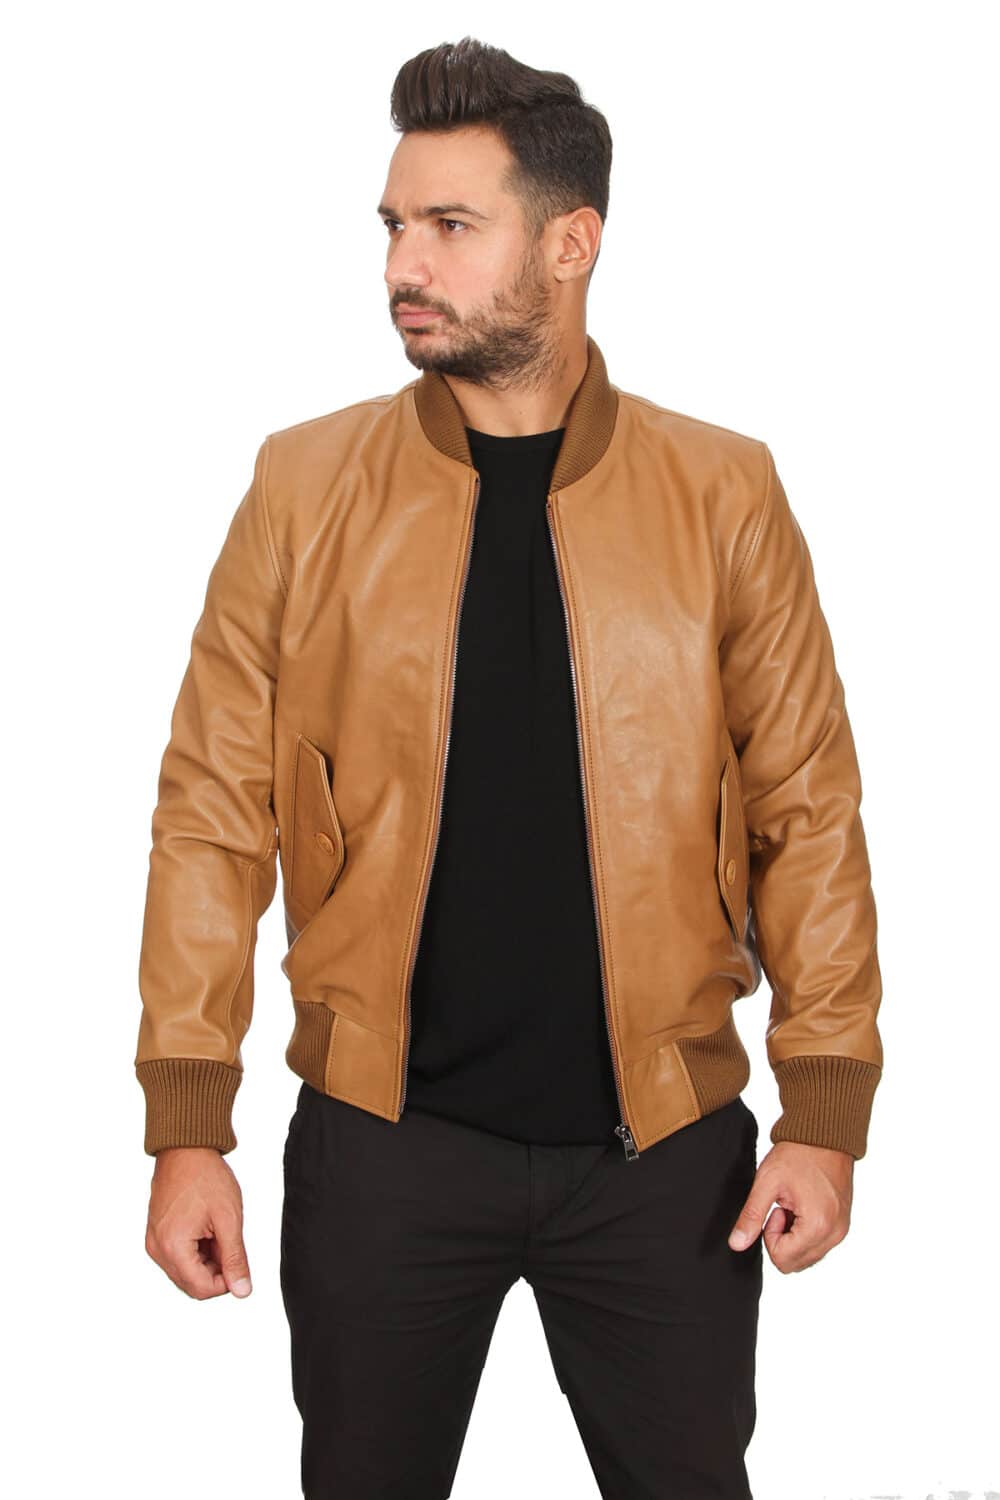 100% Mens Black Leather Jacket Leather Coat & Vest at Affordable Price